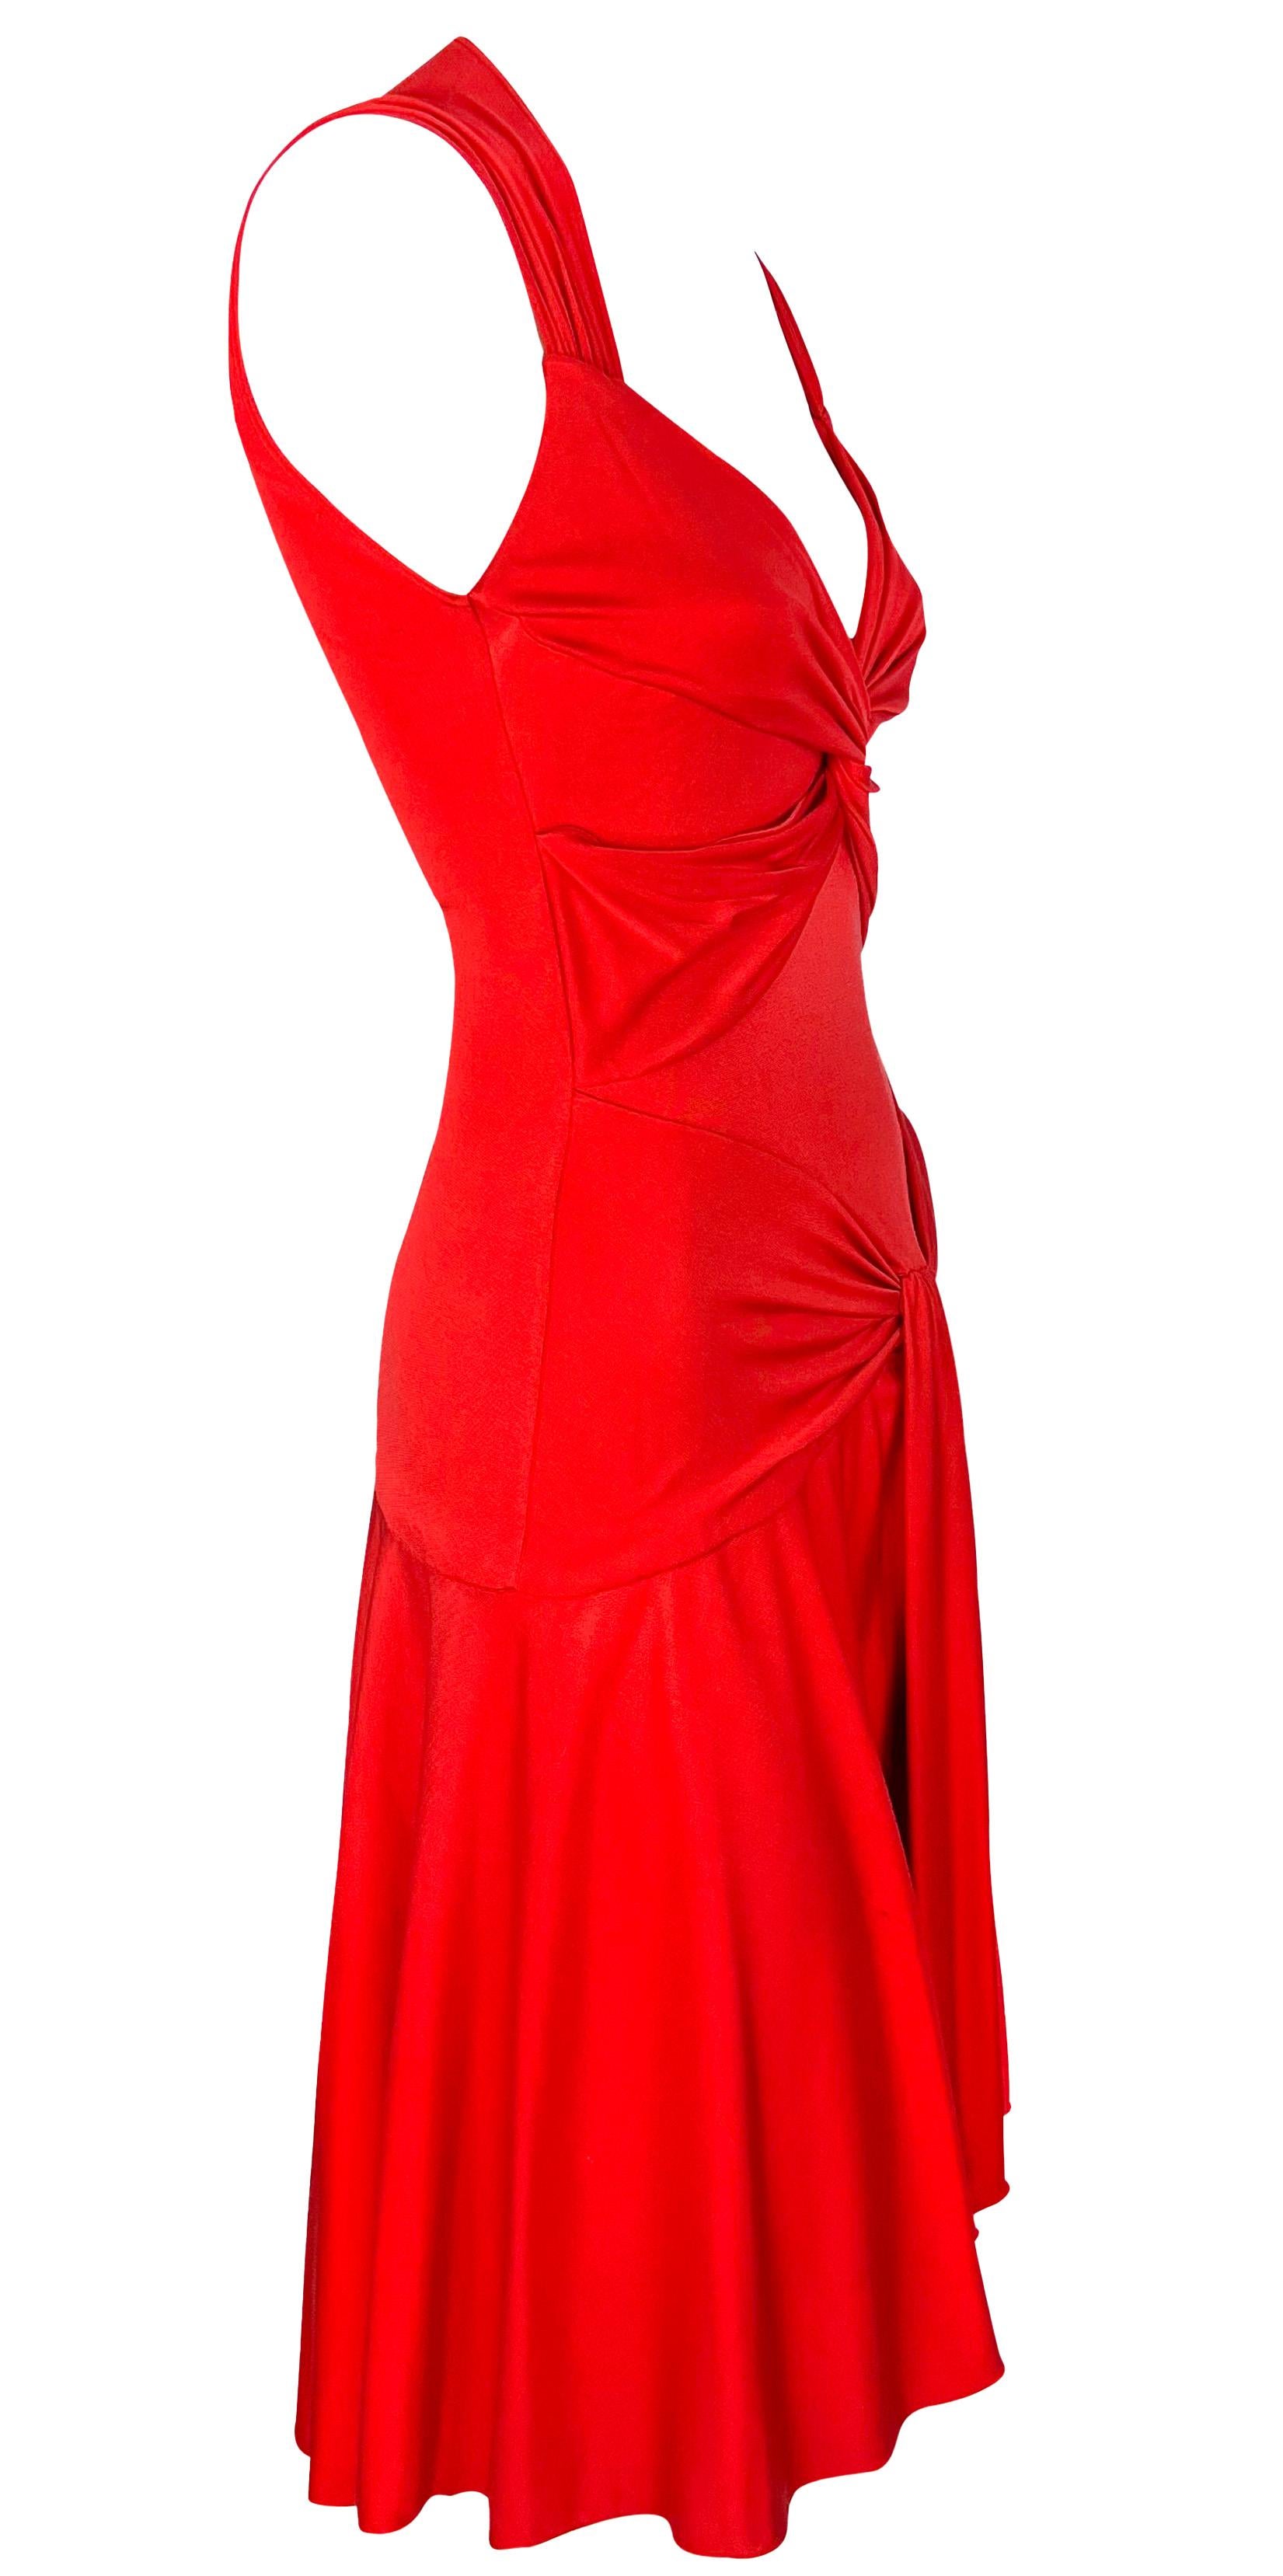 S/S 2004 Valentino Garavani Runway Red Silk Bodycon Flare Mini Dress For Sale 5